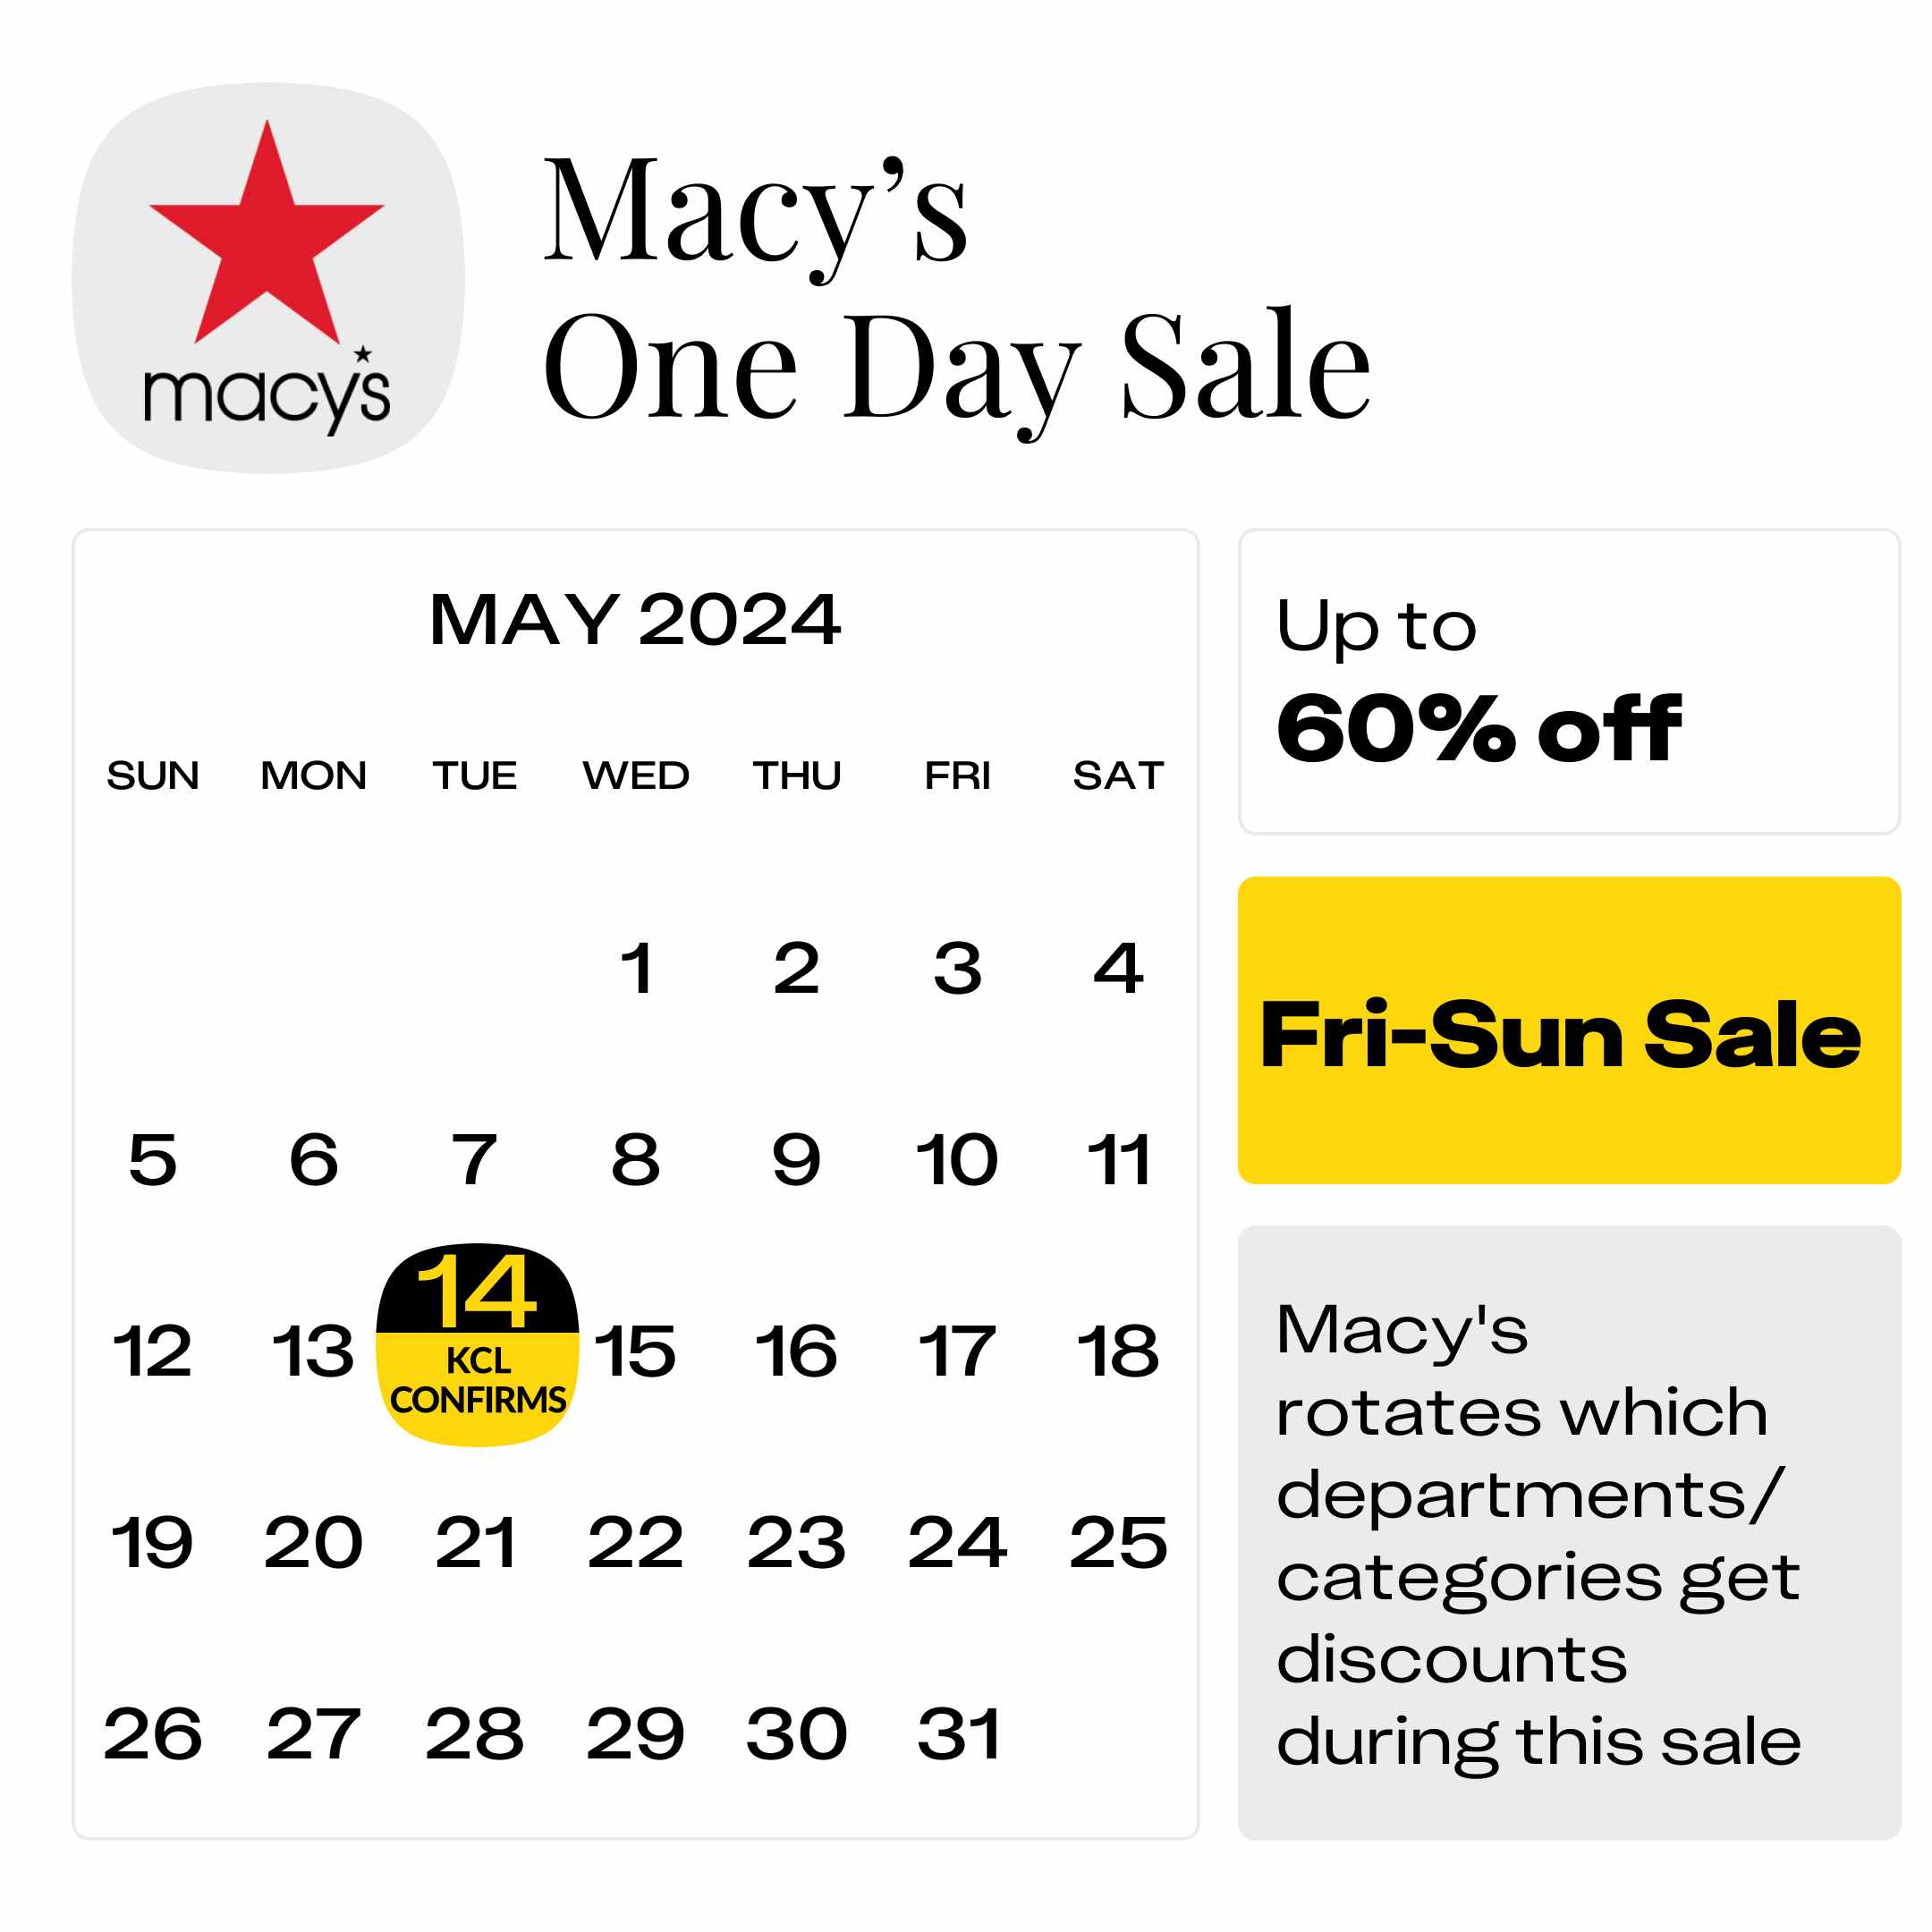 Macys-One-Day-Sale